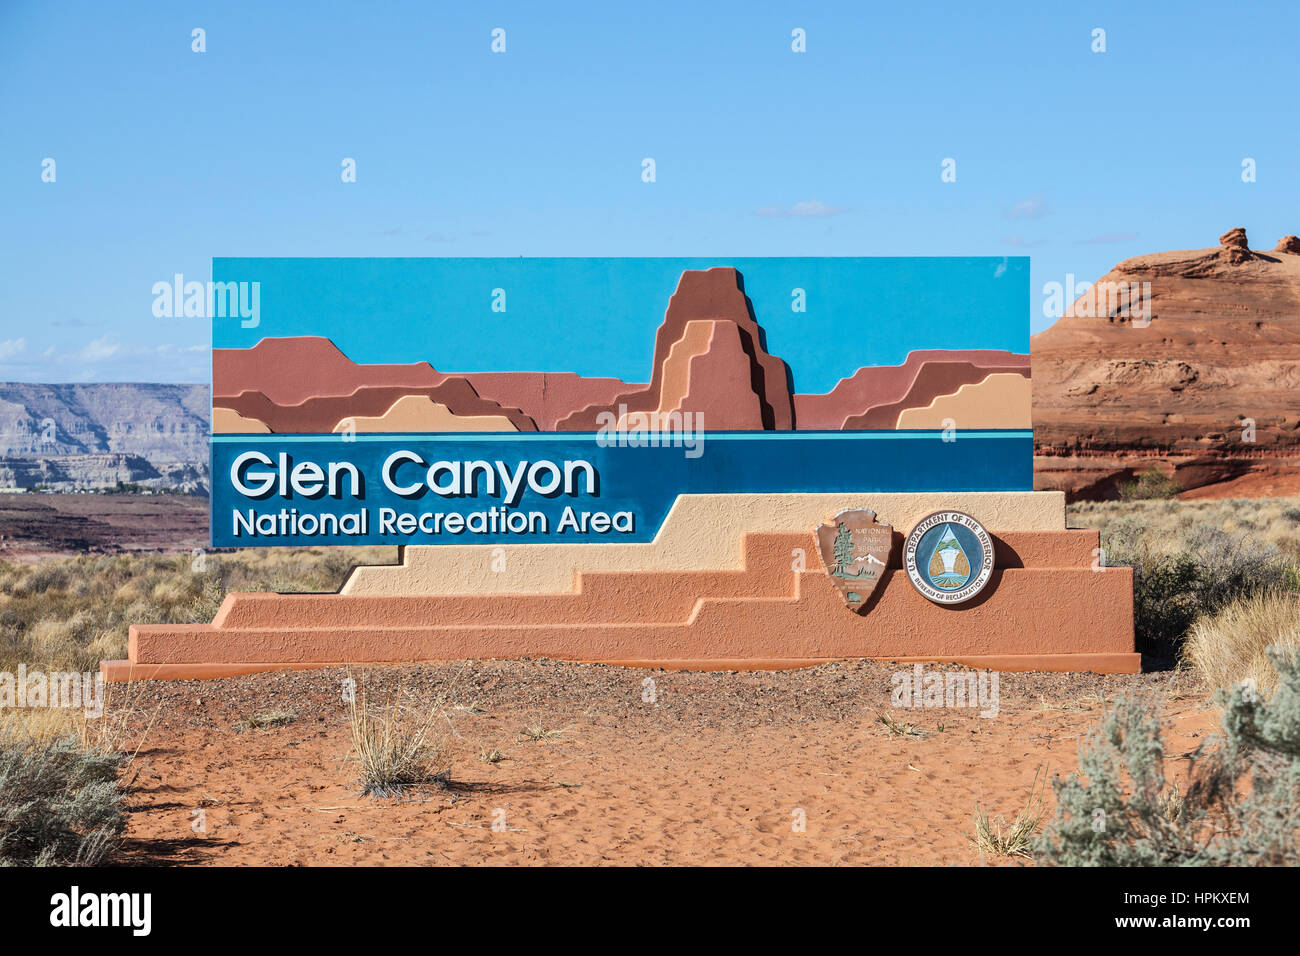 Pagina, Arizona, Stati Uniti d'America - 17 Ottobre 2016: Glen Canyon National Recreation Area entrata segno nel nord del deserto dell'Arizona. Foto Stock